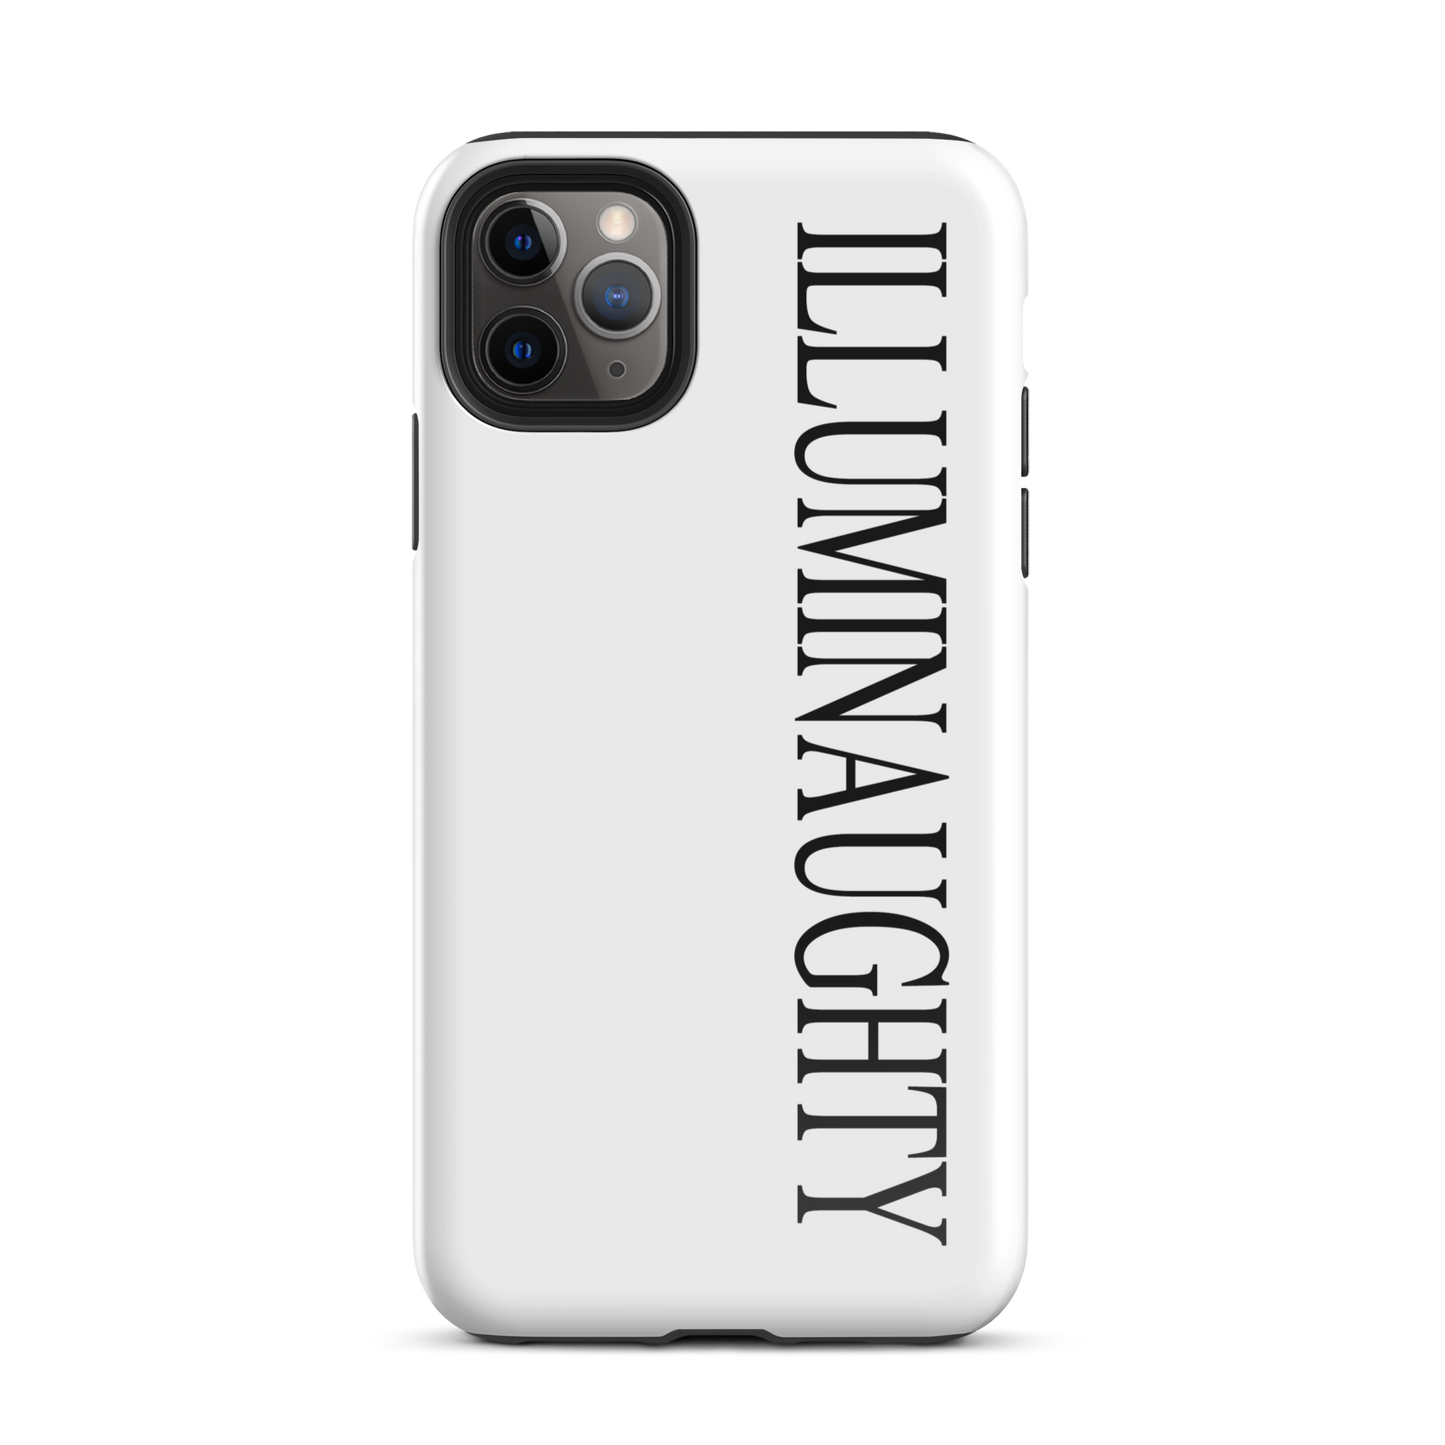 ILLUMINAUGHTY IPHONE CASE